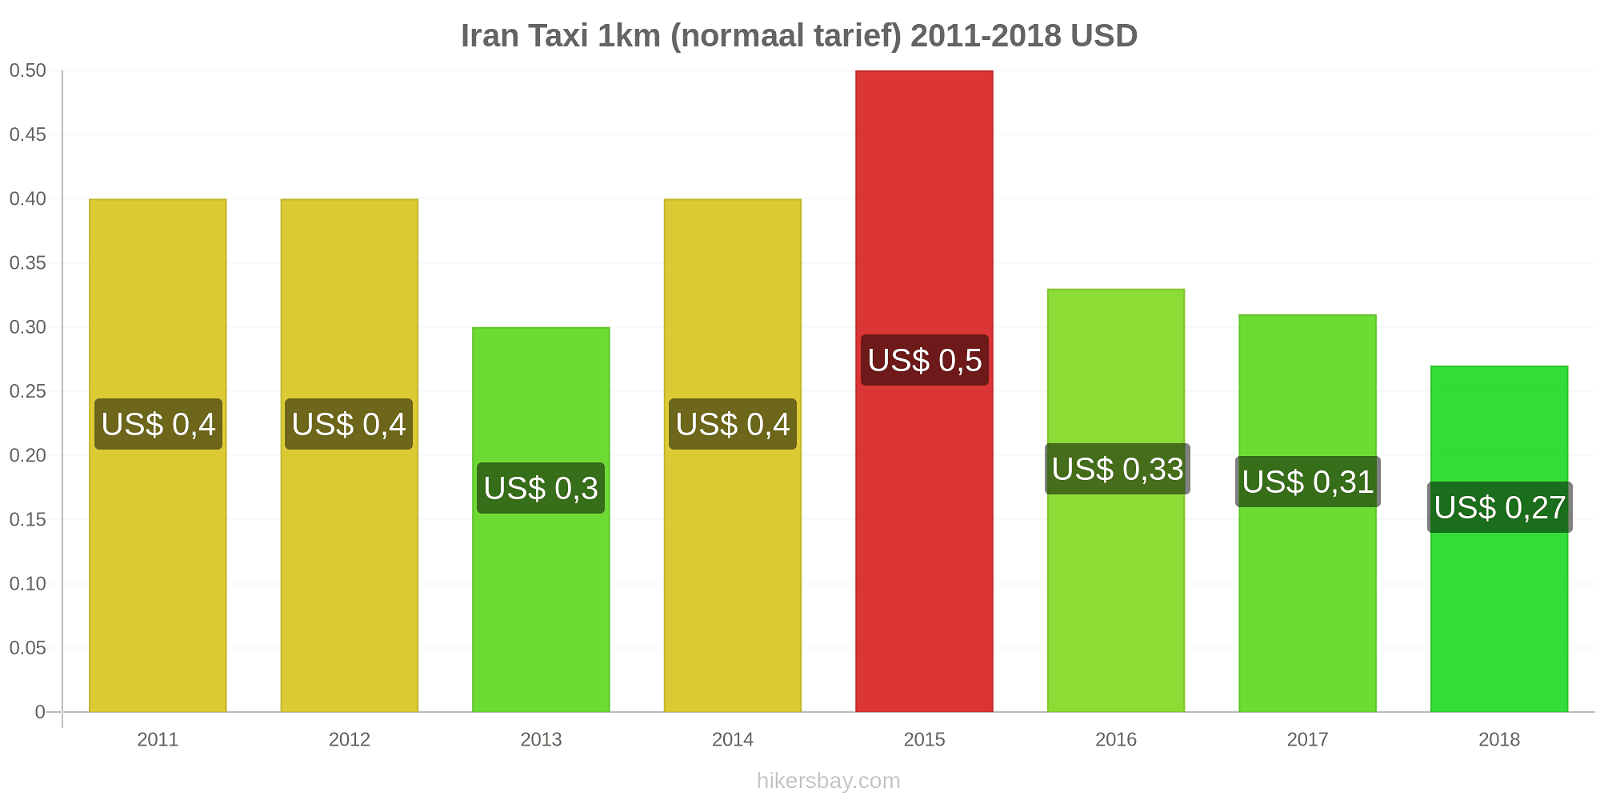 Iran prijswijzigingen Taxi 1km (normaal tarief) hikersbay.com